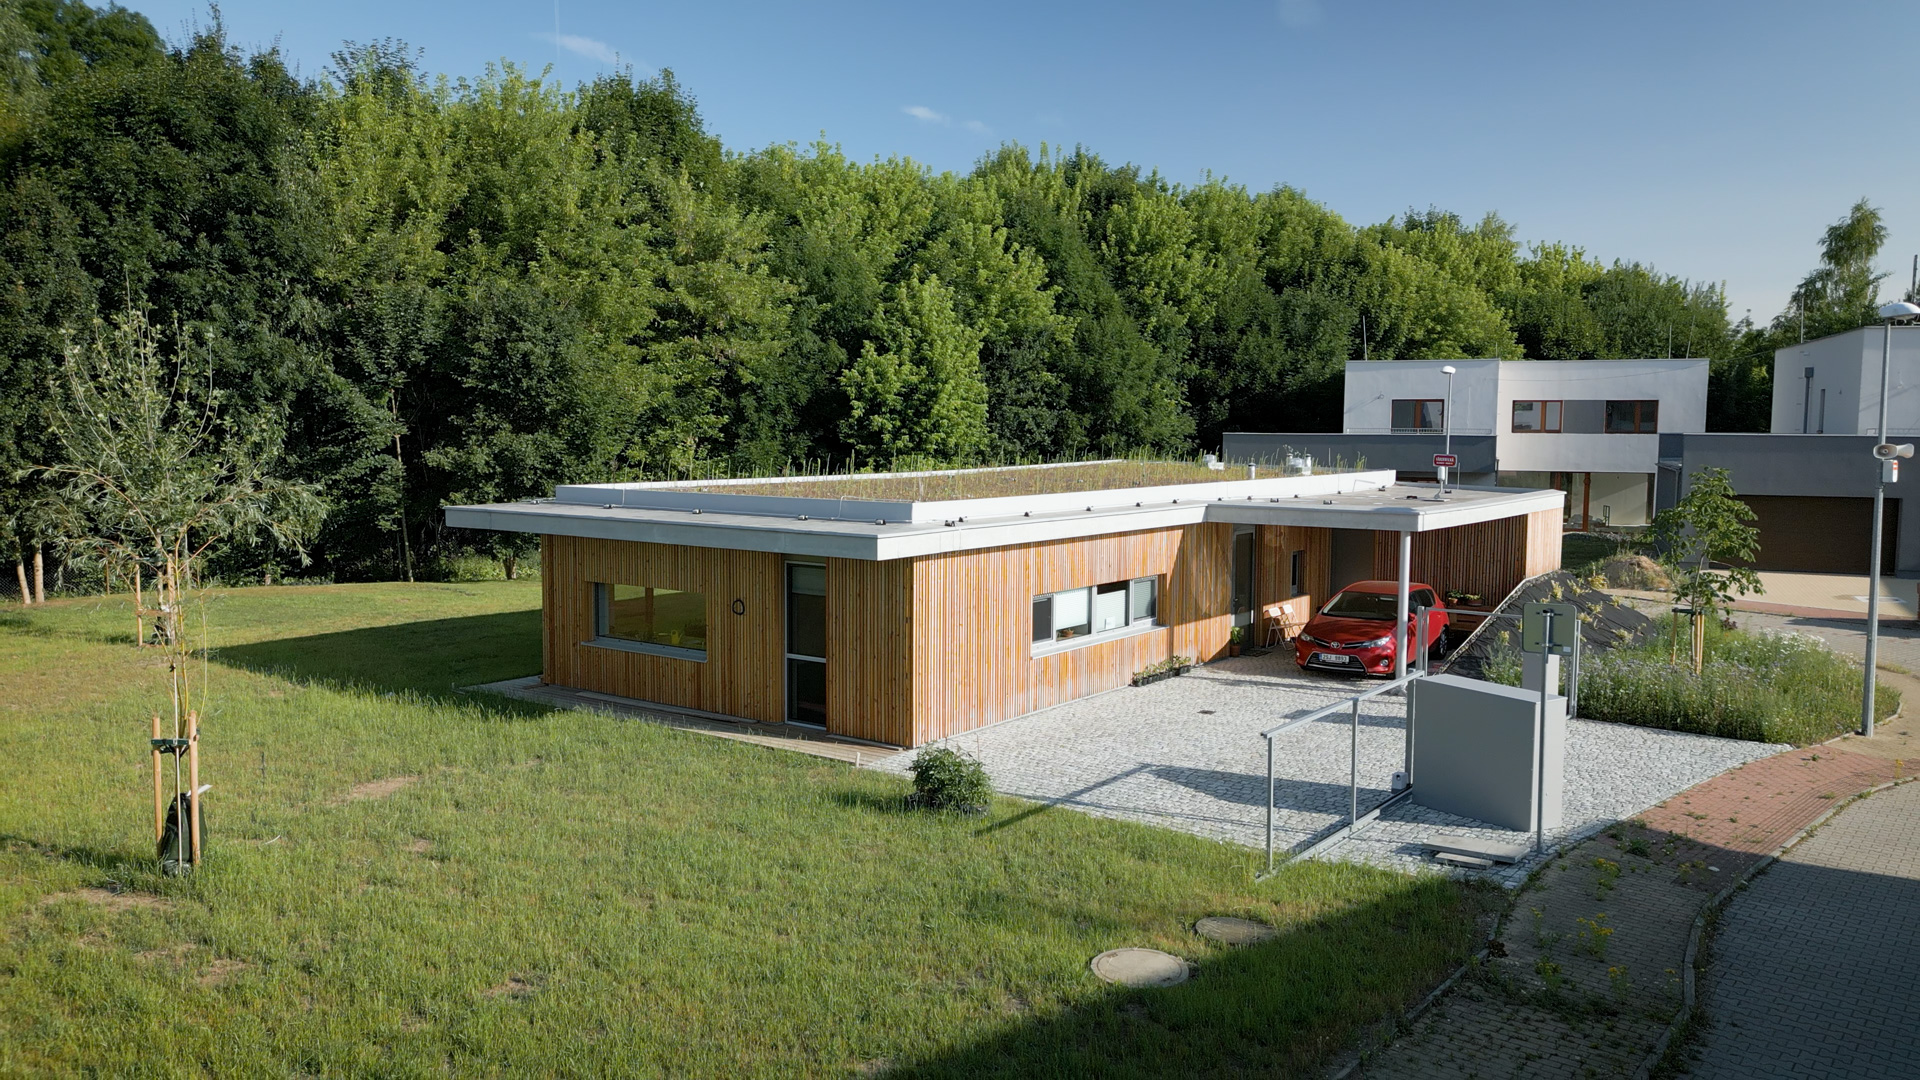 RD Kolovraty - Zajímavě řešený přízemní rodinný dům se zelenou střechou